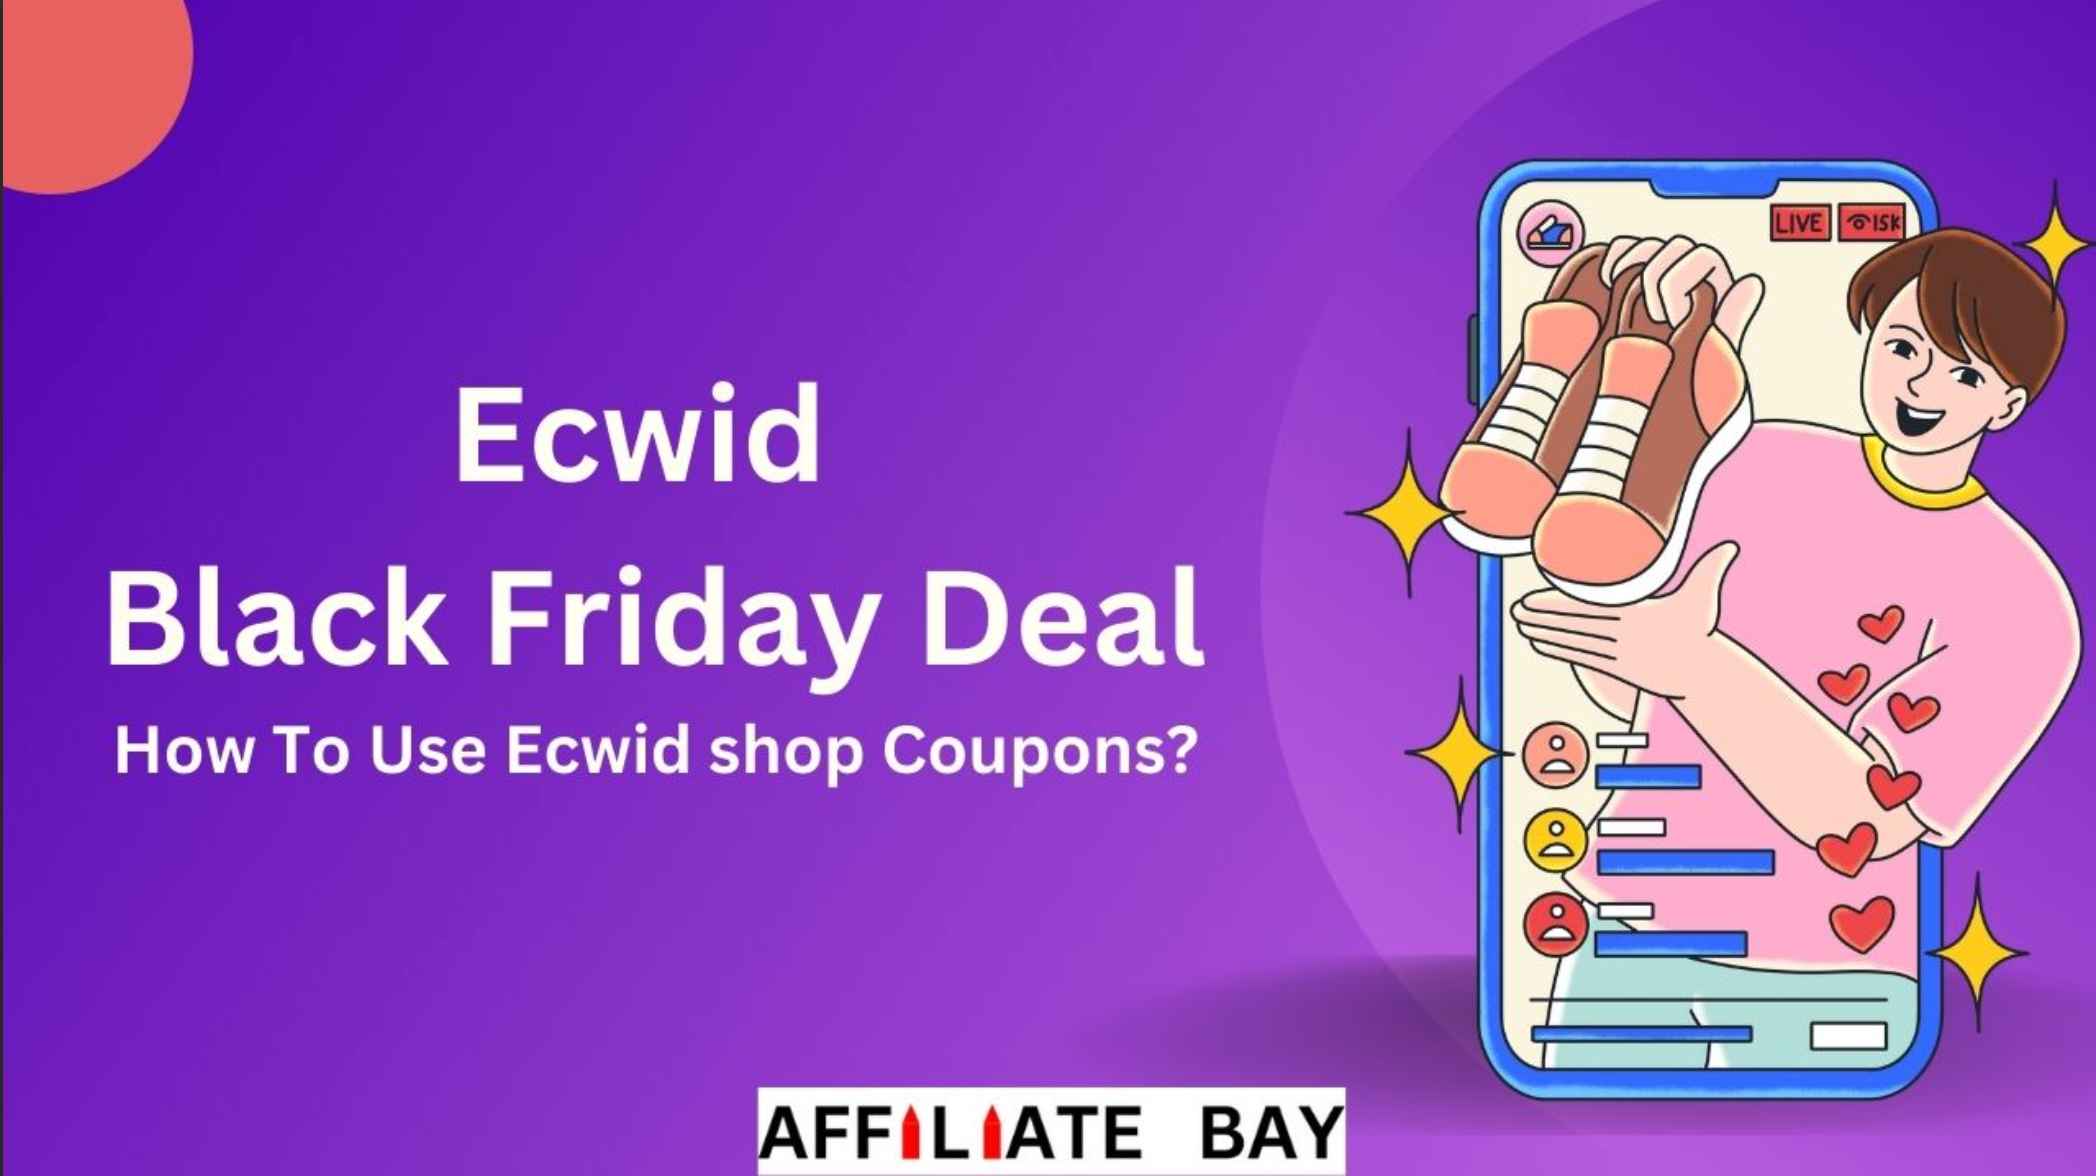 Ecwid Black Friday Deal